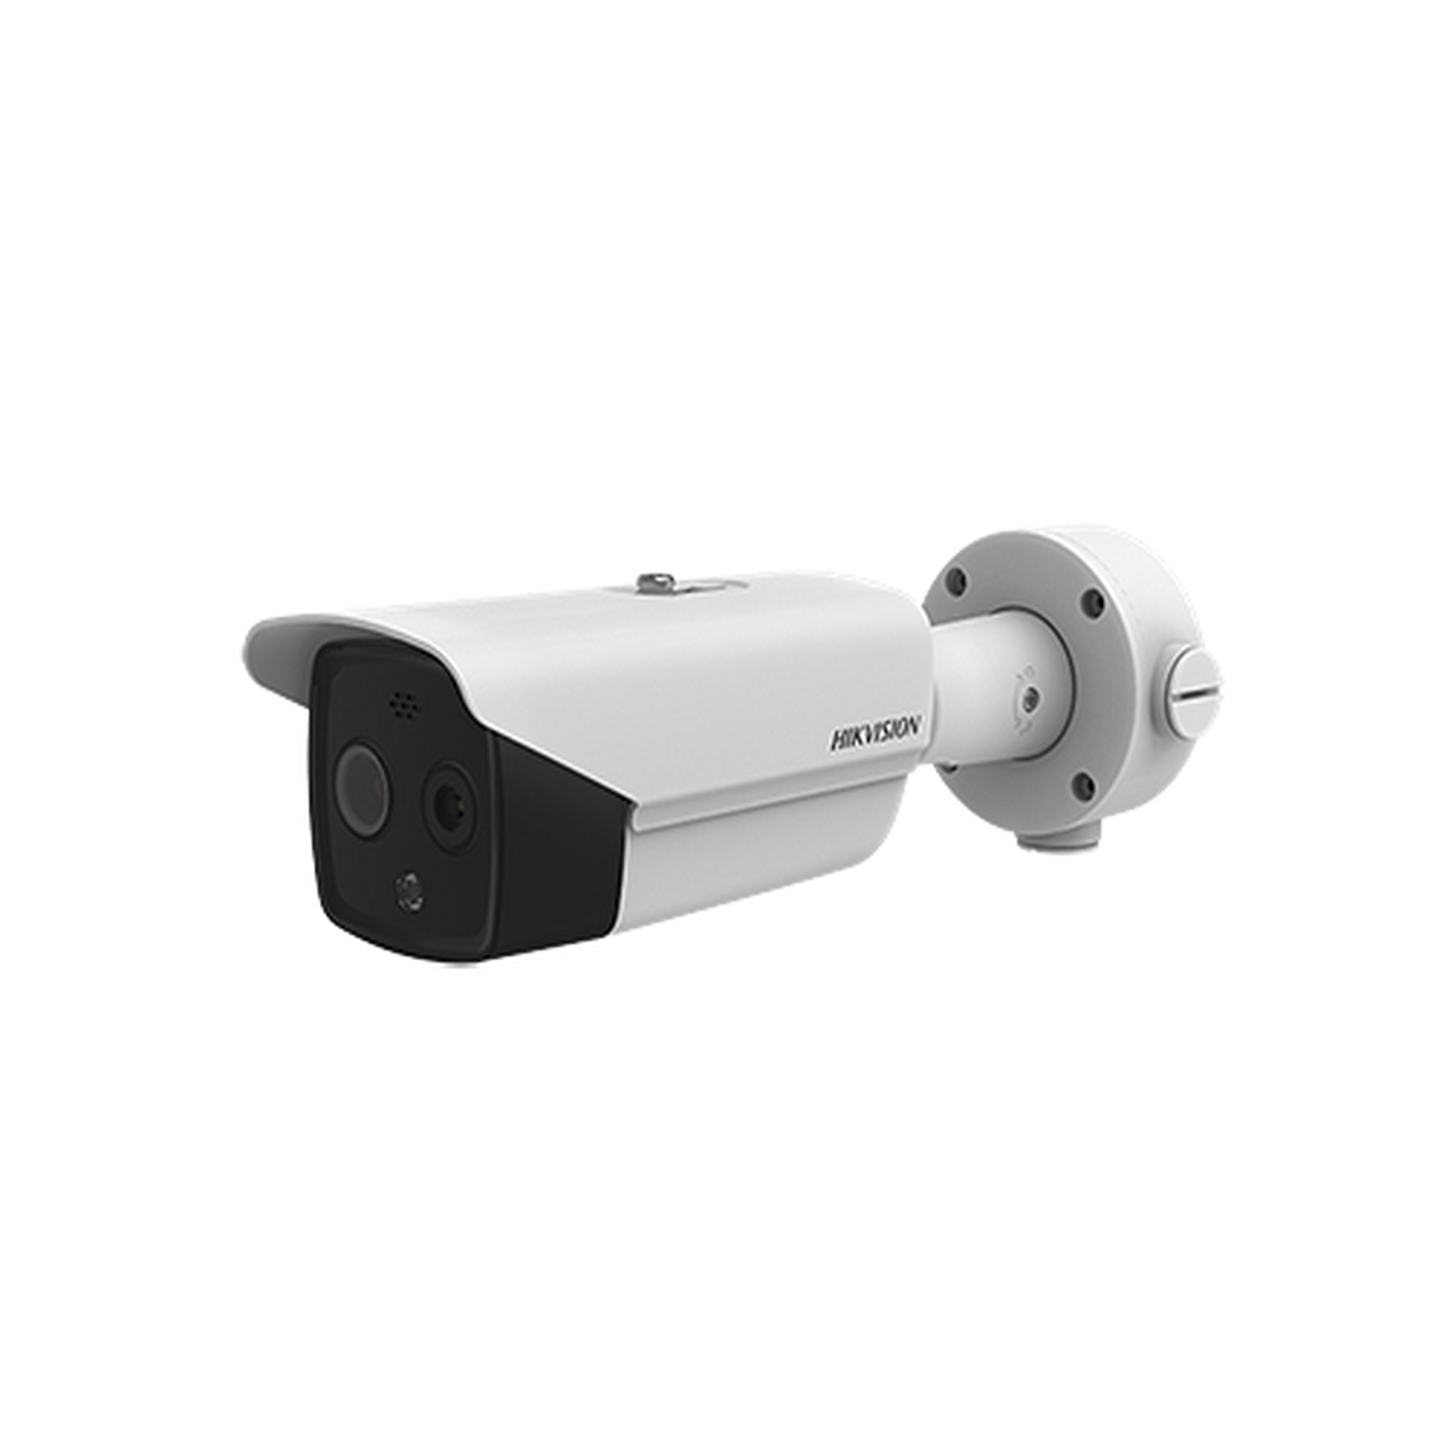 Bala IP Dual / Térmica 3.1 mm (160 x 120) / Óptico 4 mm (4 Megapixel) / Termométrica / Detección de Temperatura / PoE /Exterior IP66 / Sirena y Luz Intermitente Integrada / MicroSD